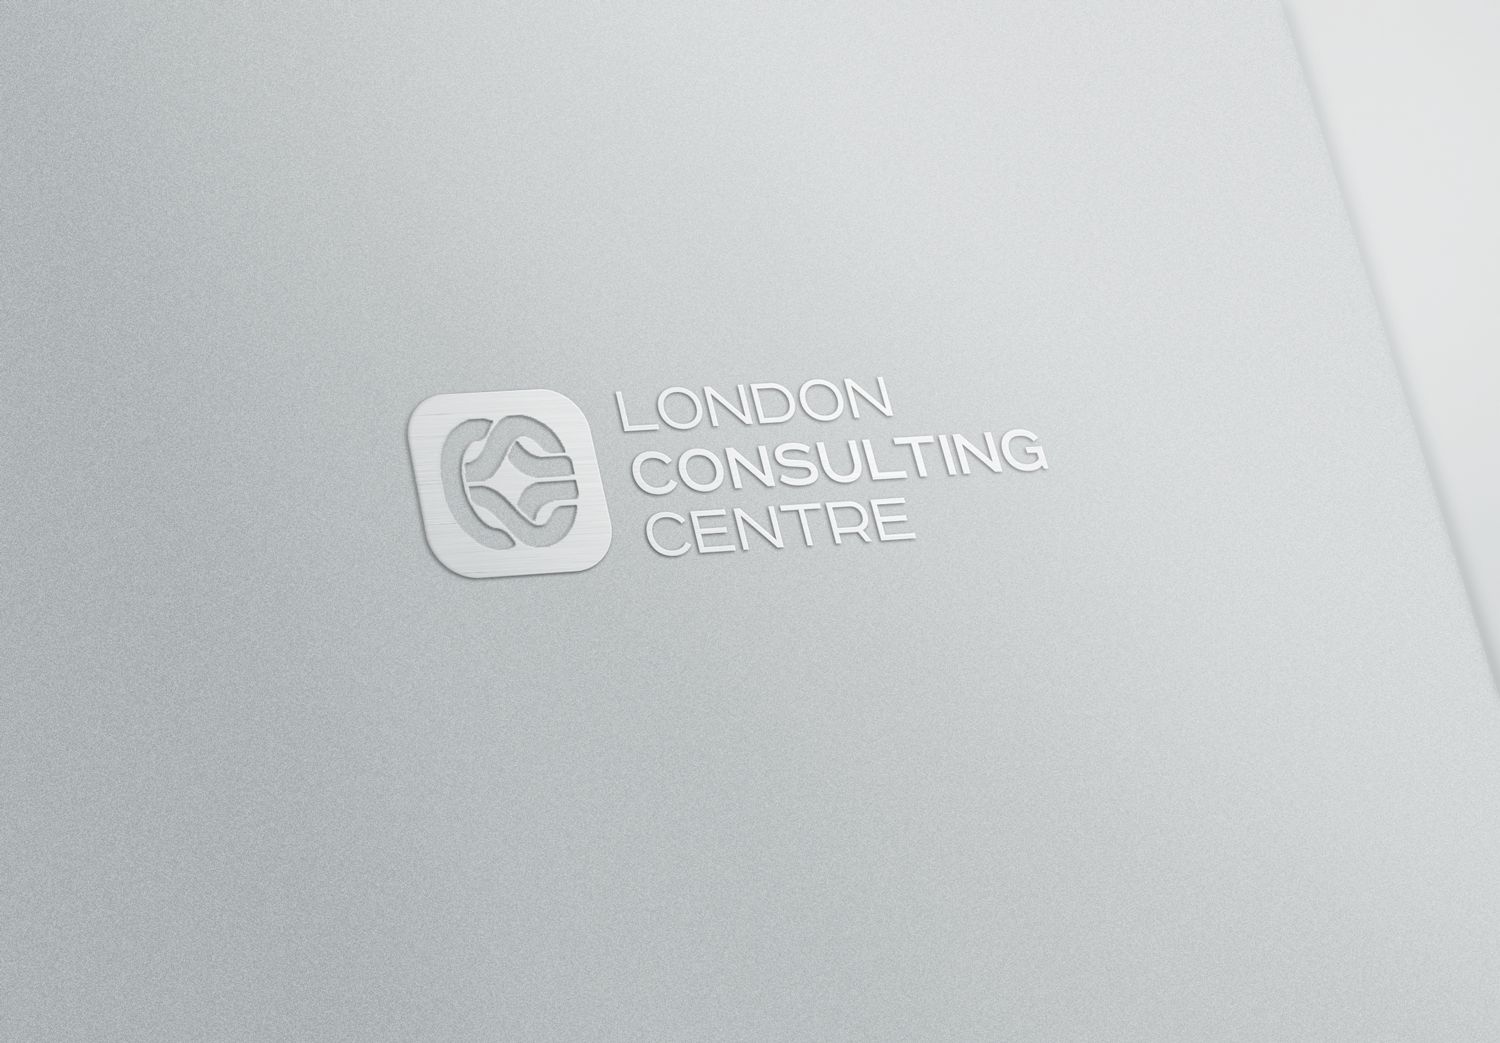 ФС для London Consulting Centre - дизайнер sz888333